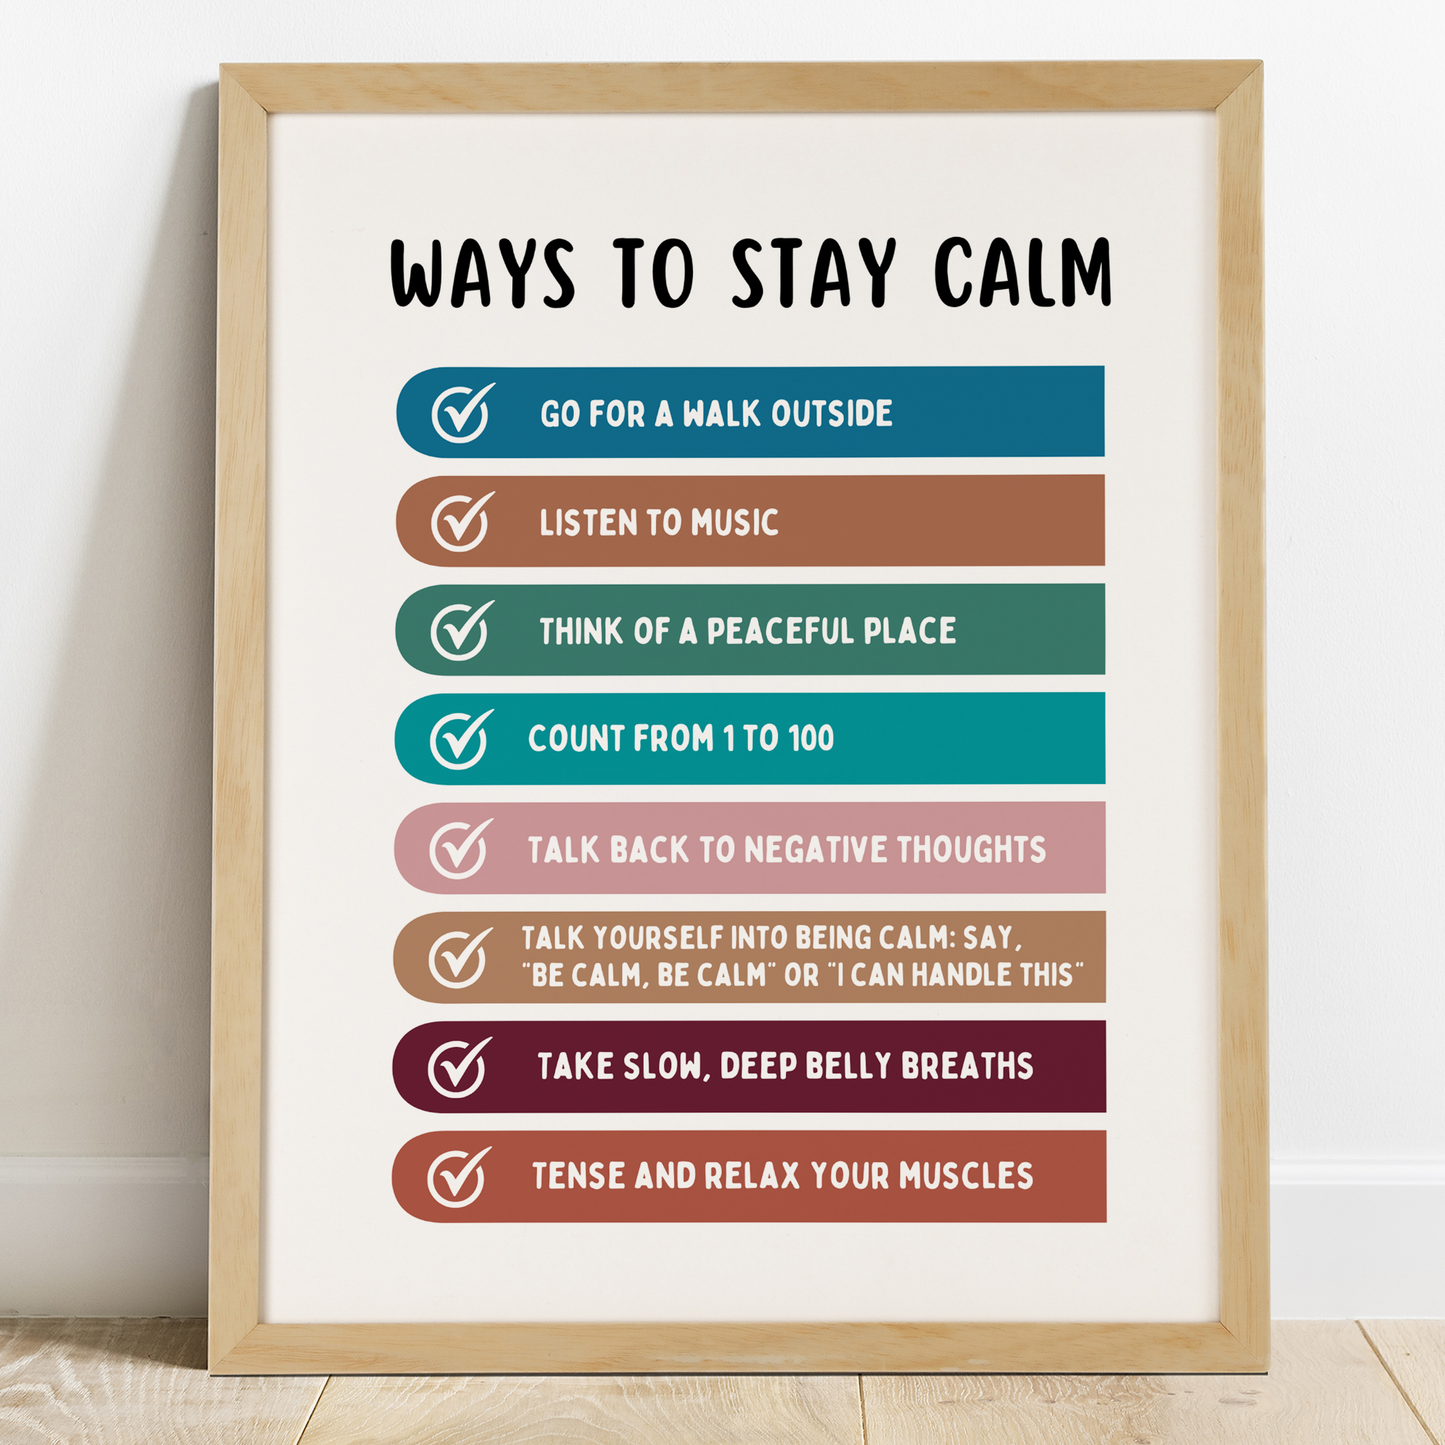 Ways to Stay Calm